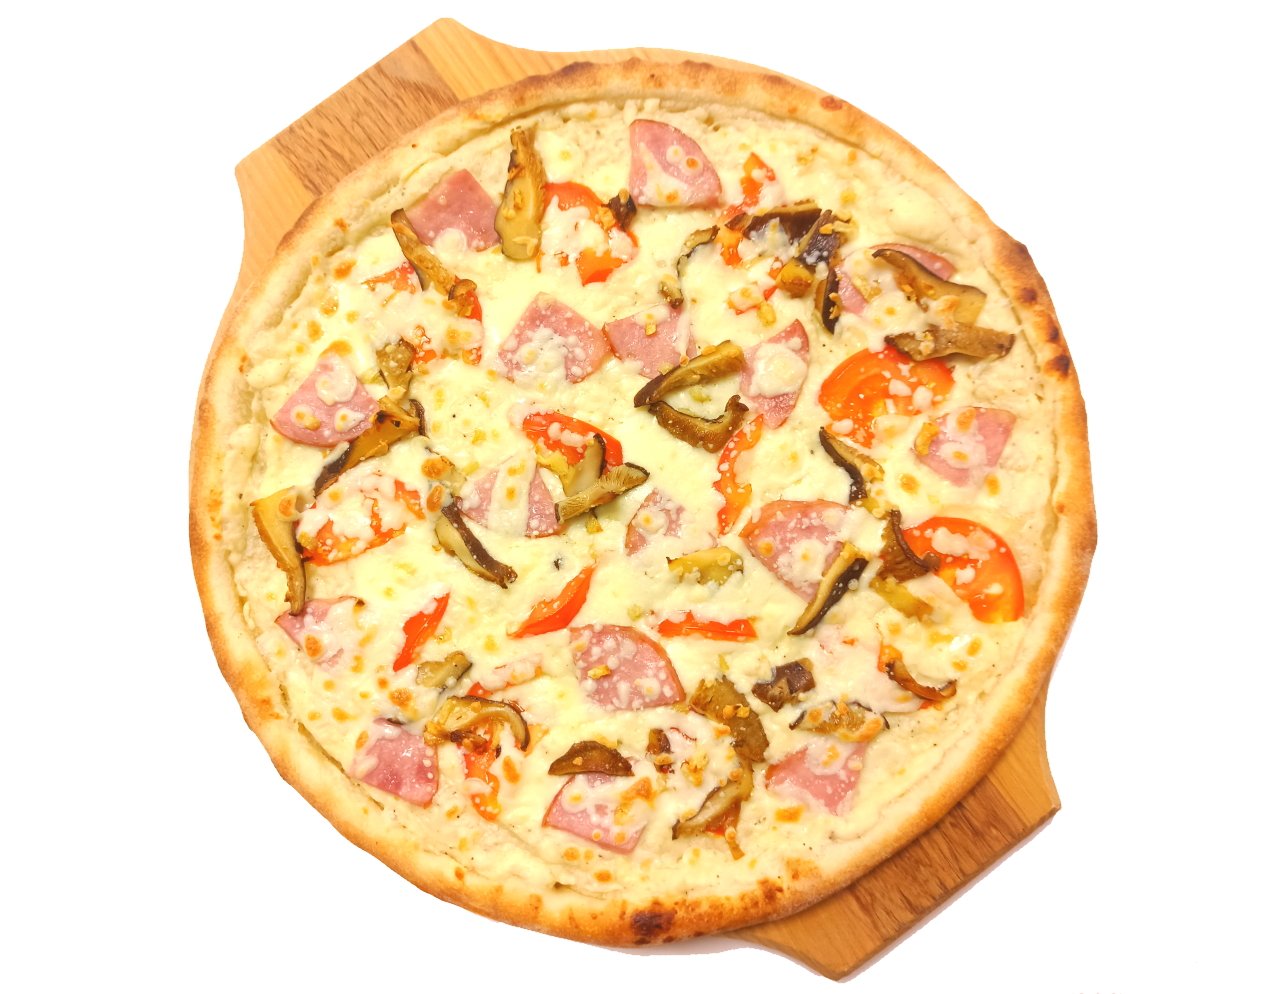 глаголевская пицца купино ассортимент и цены фото 59